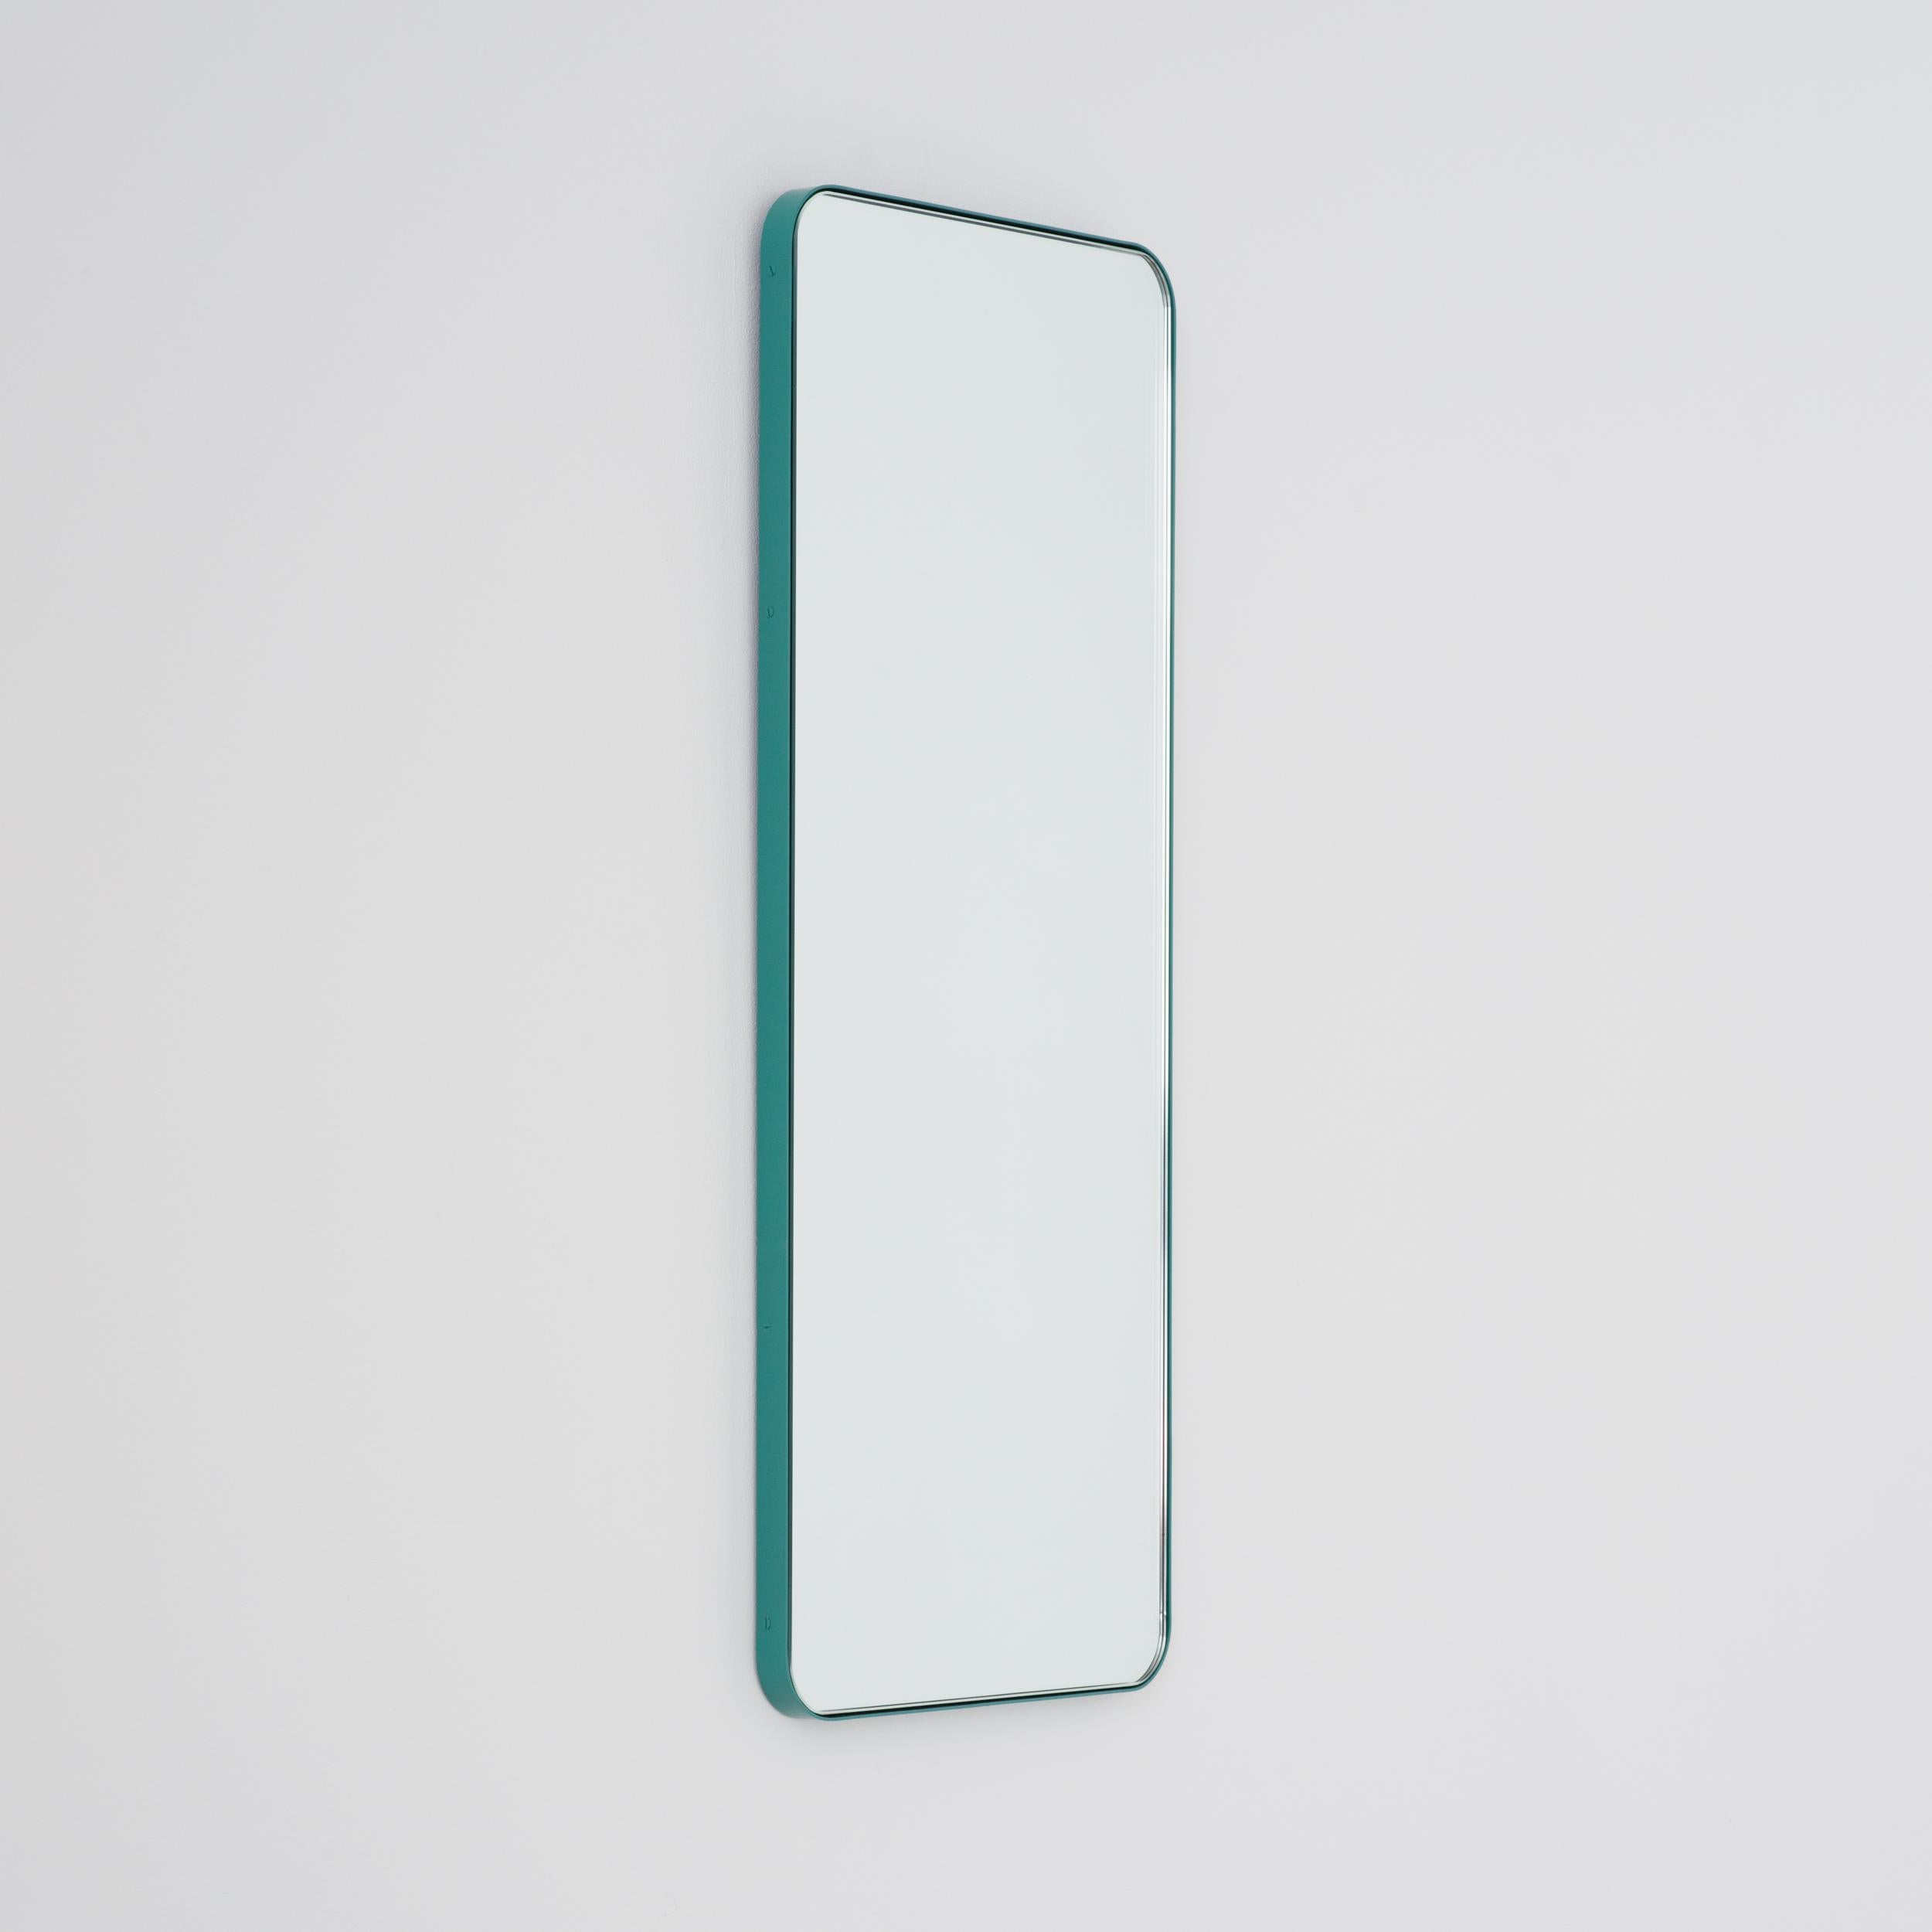 narrow rectangular mirror